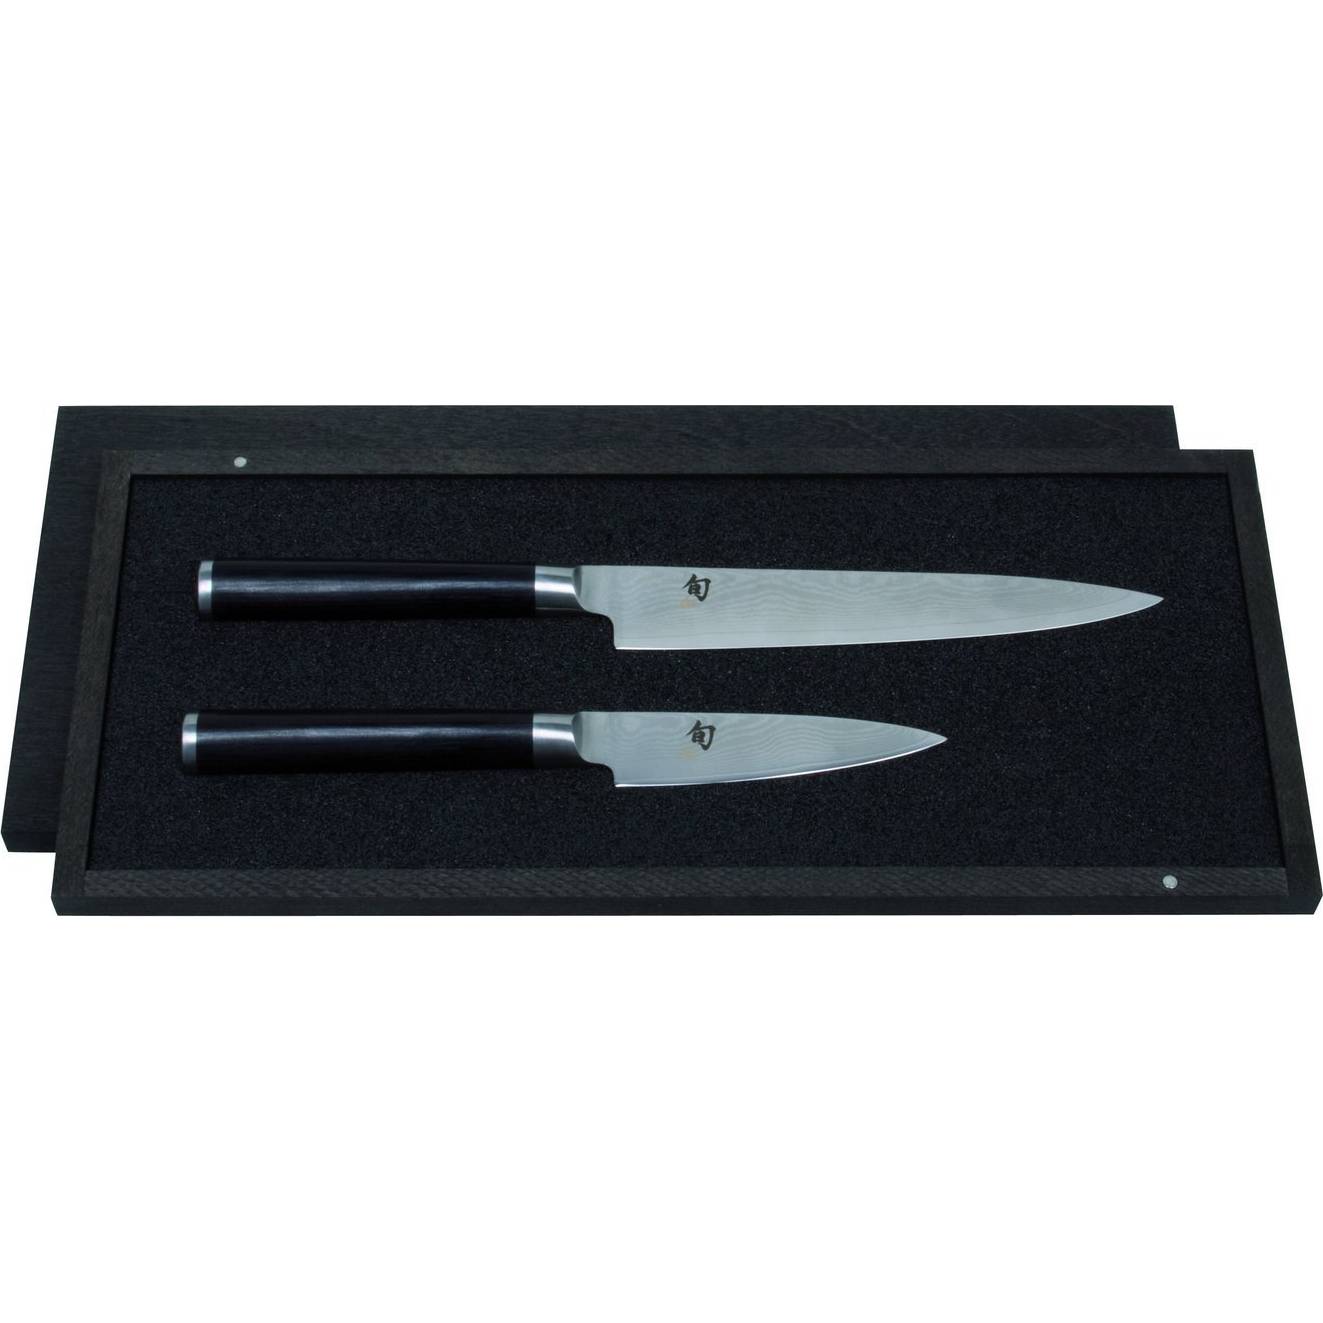 Sada kuchyňských nožů SHUN set – 2ks - KAI